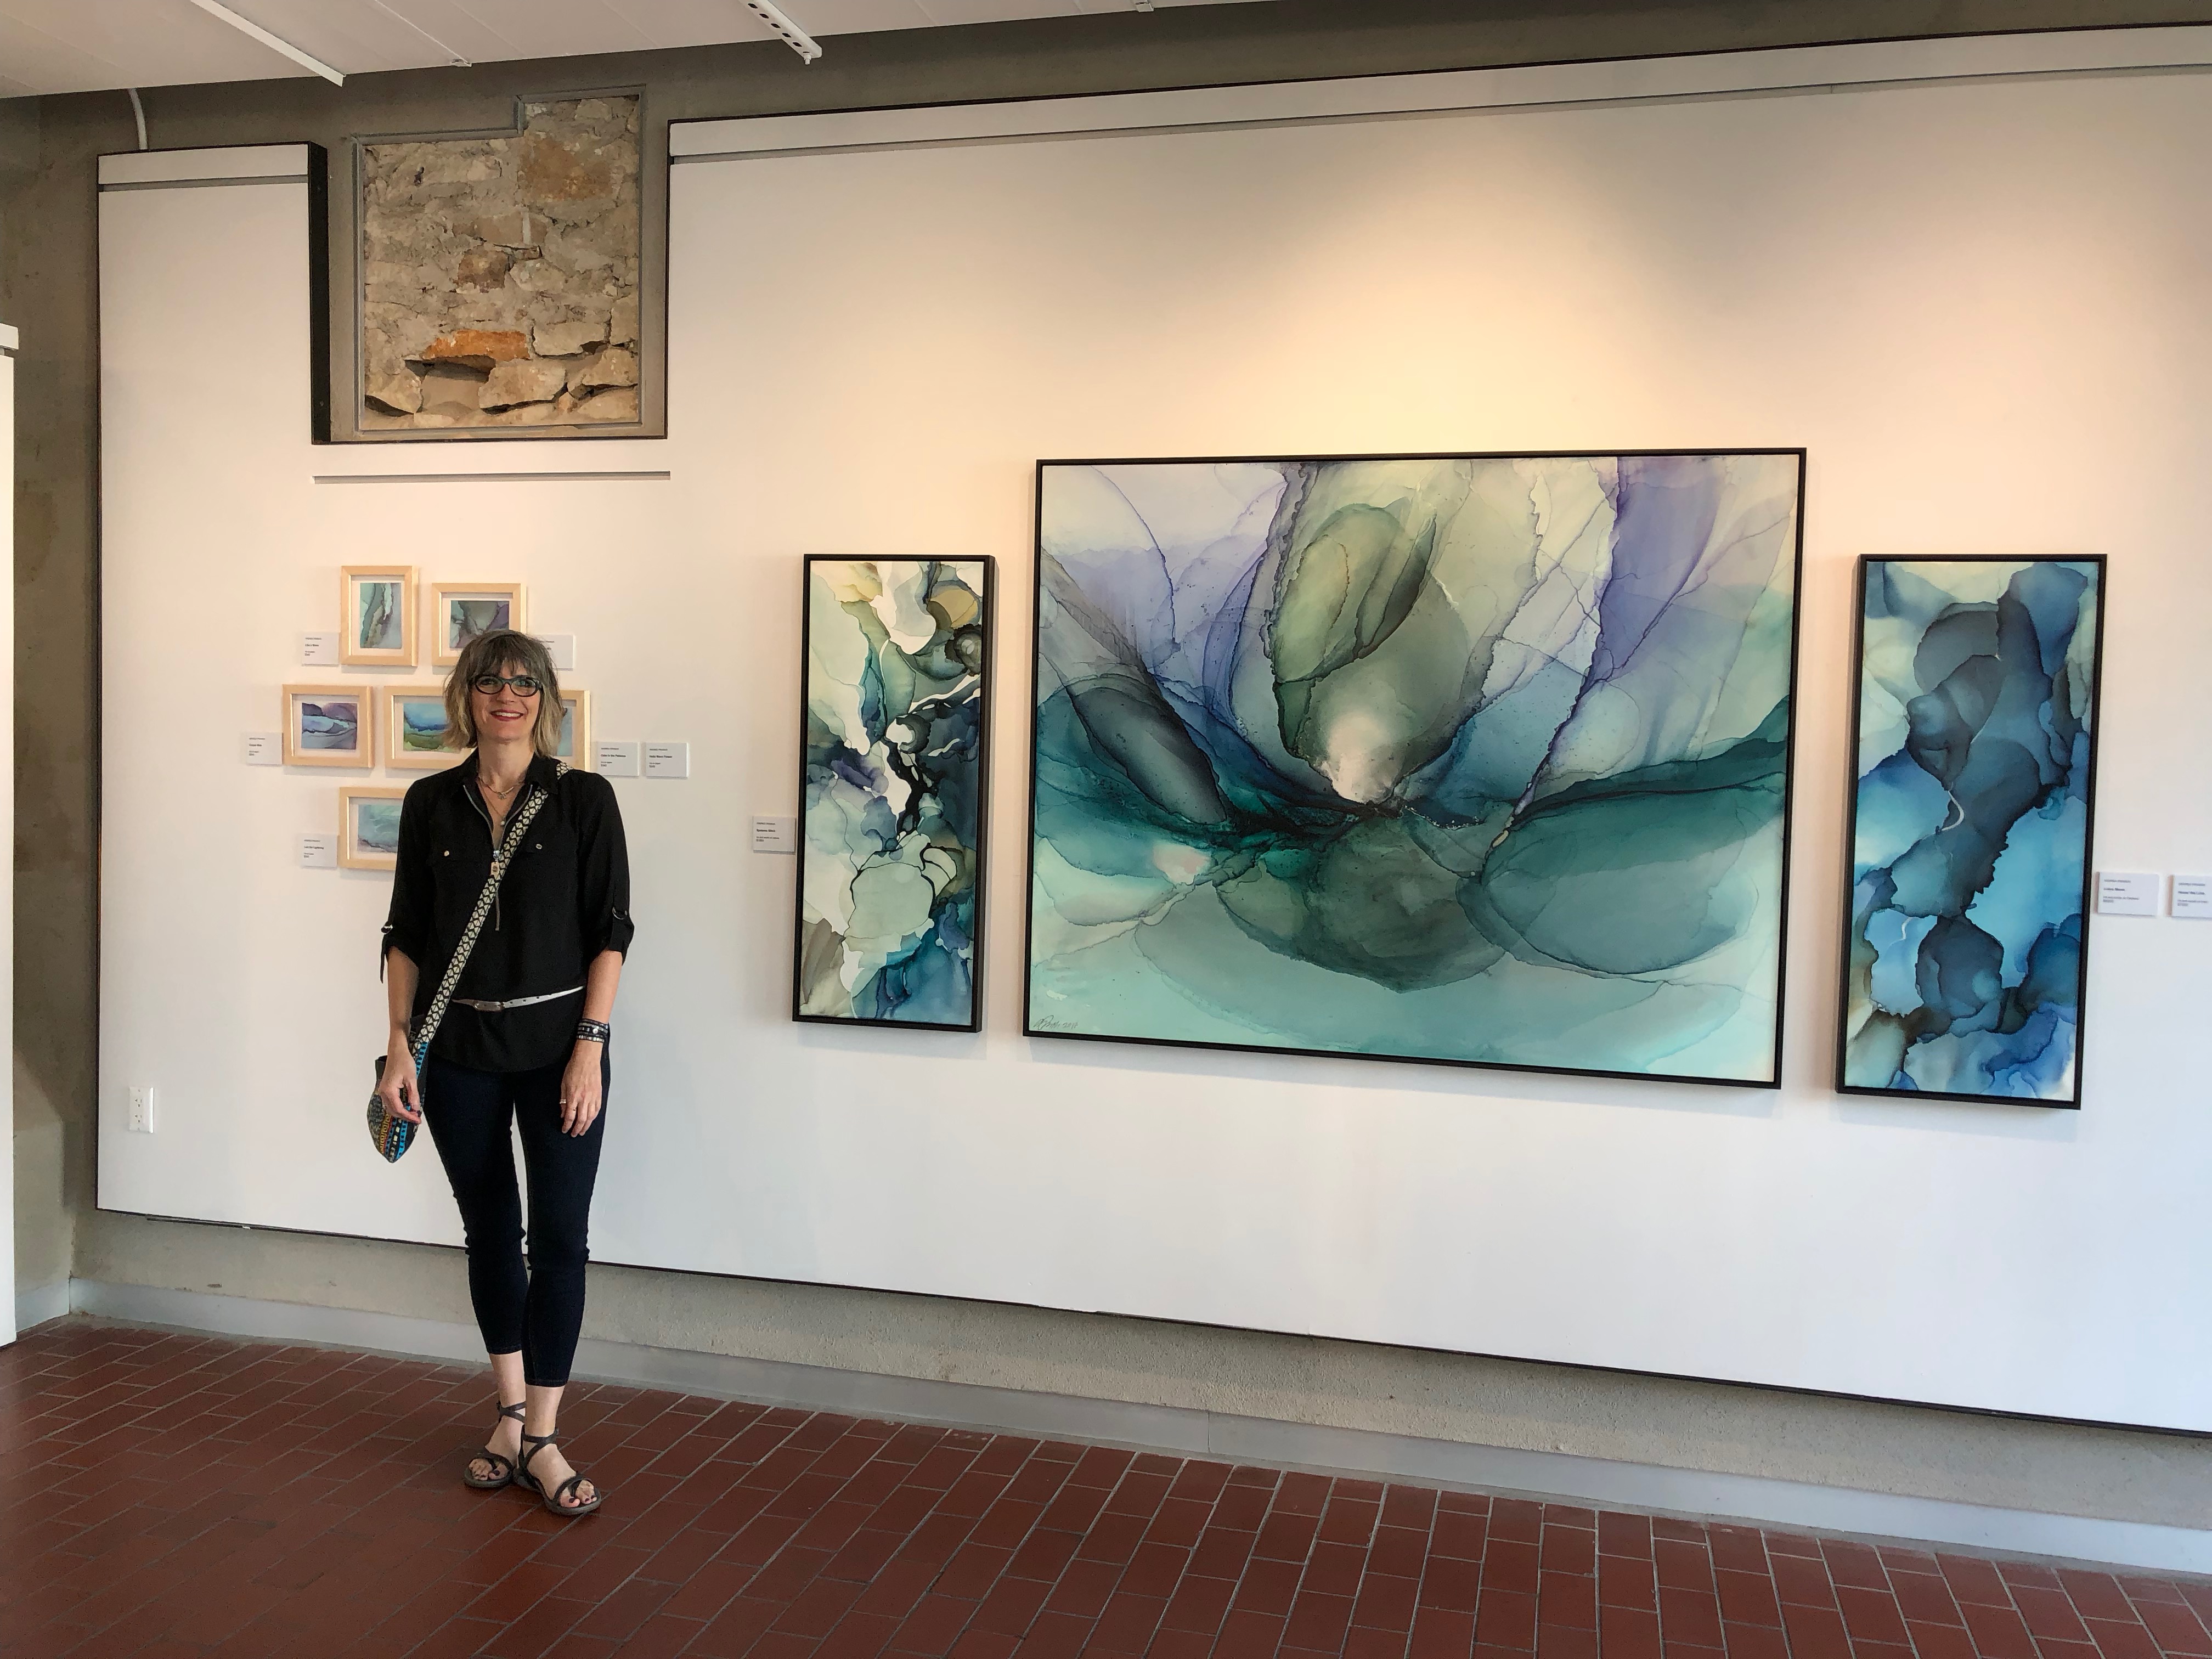 Andrea Pramuk "Fluid Worlds" Georgetown Art Center June 29 - August 5, 2018